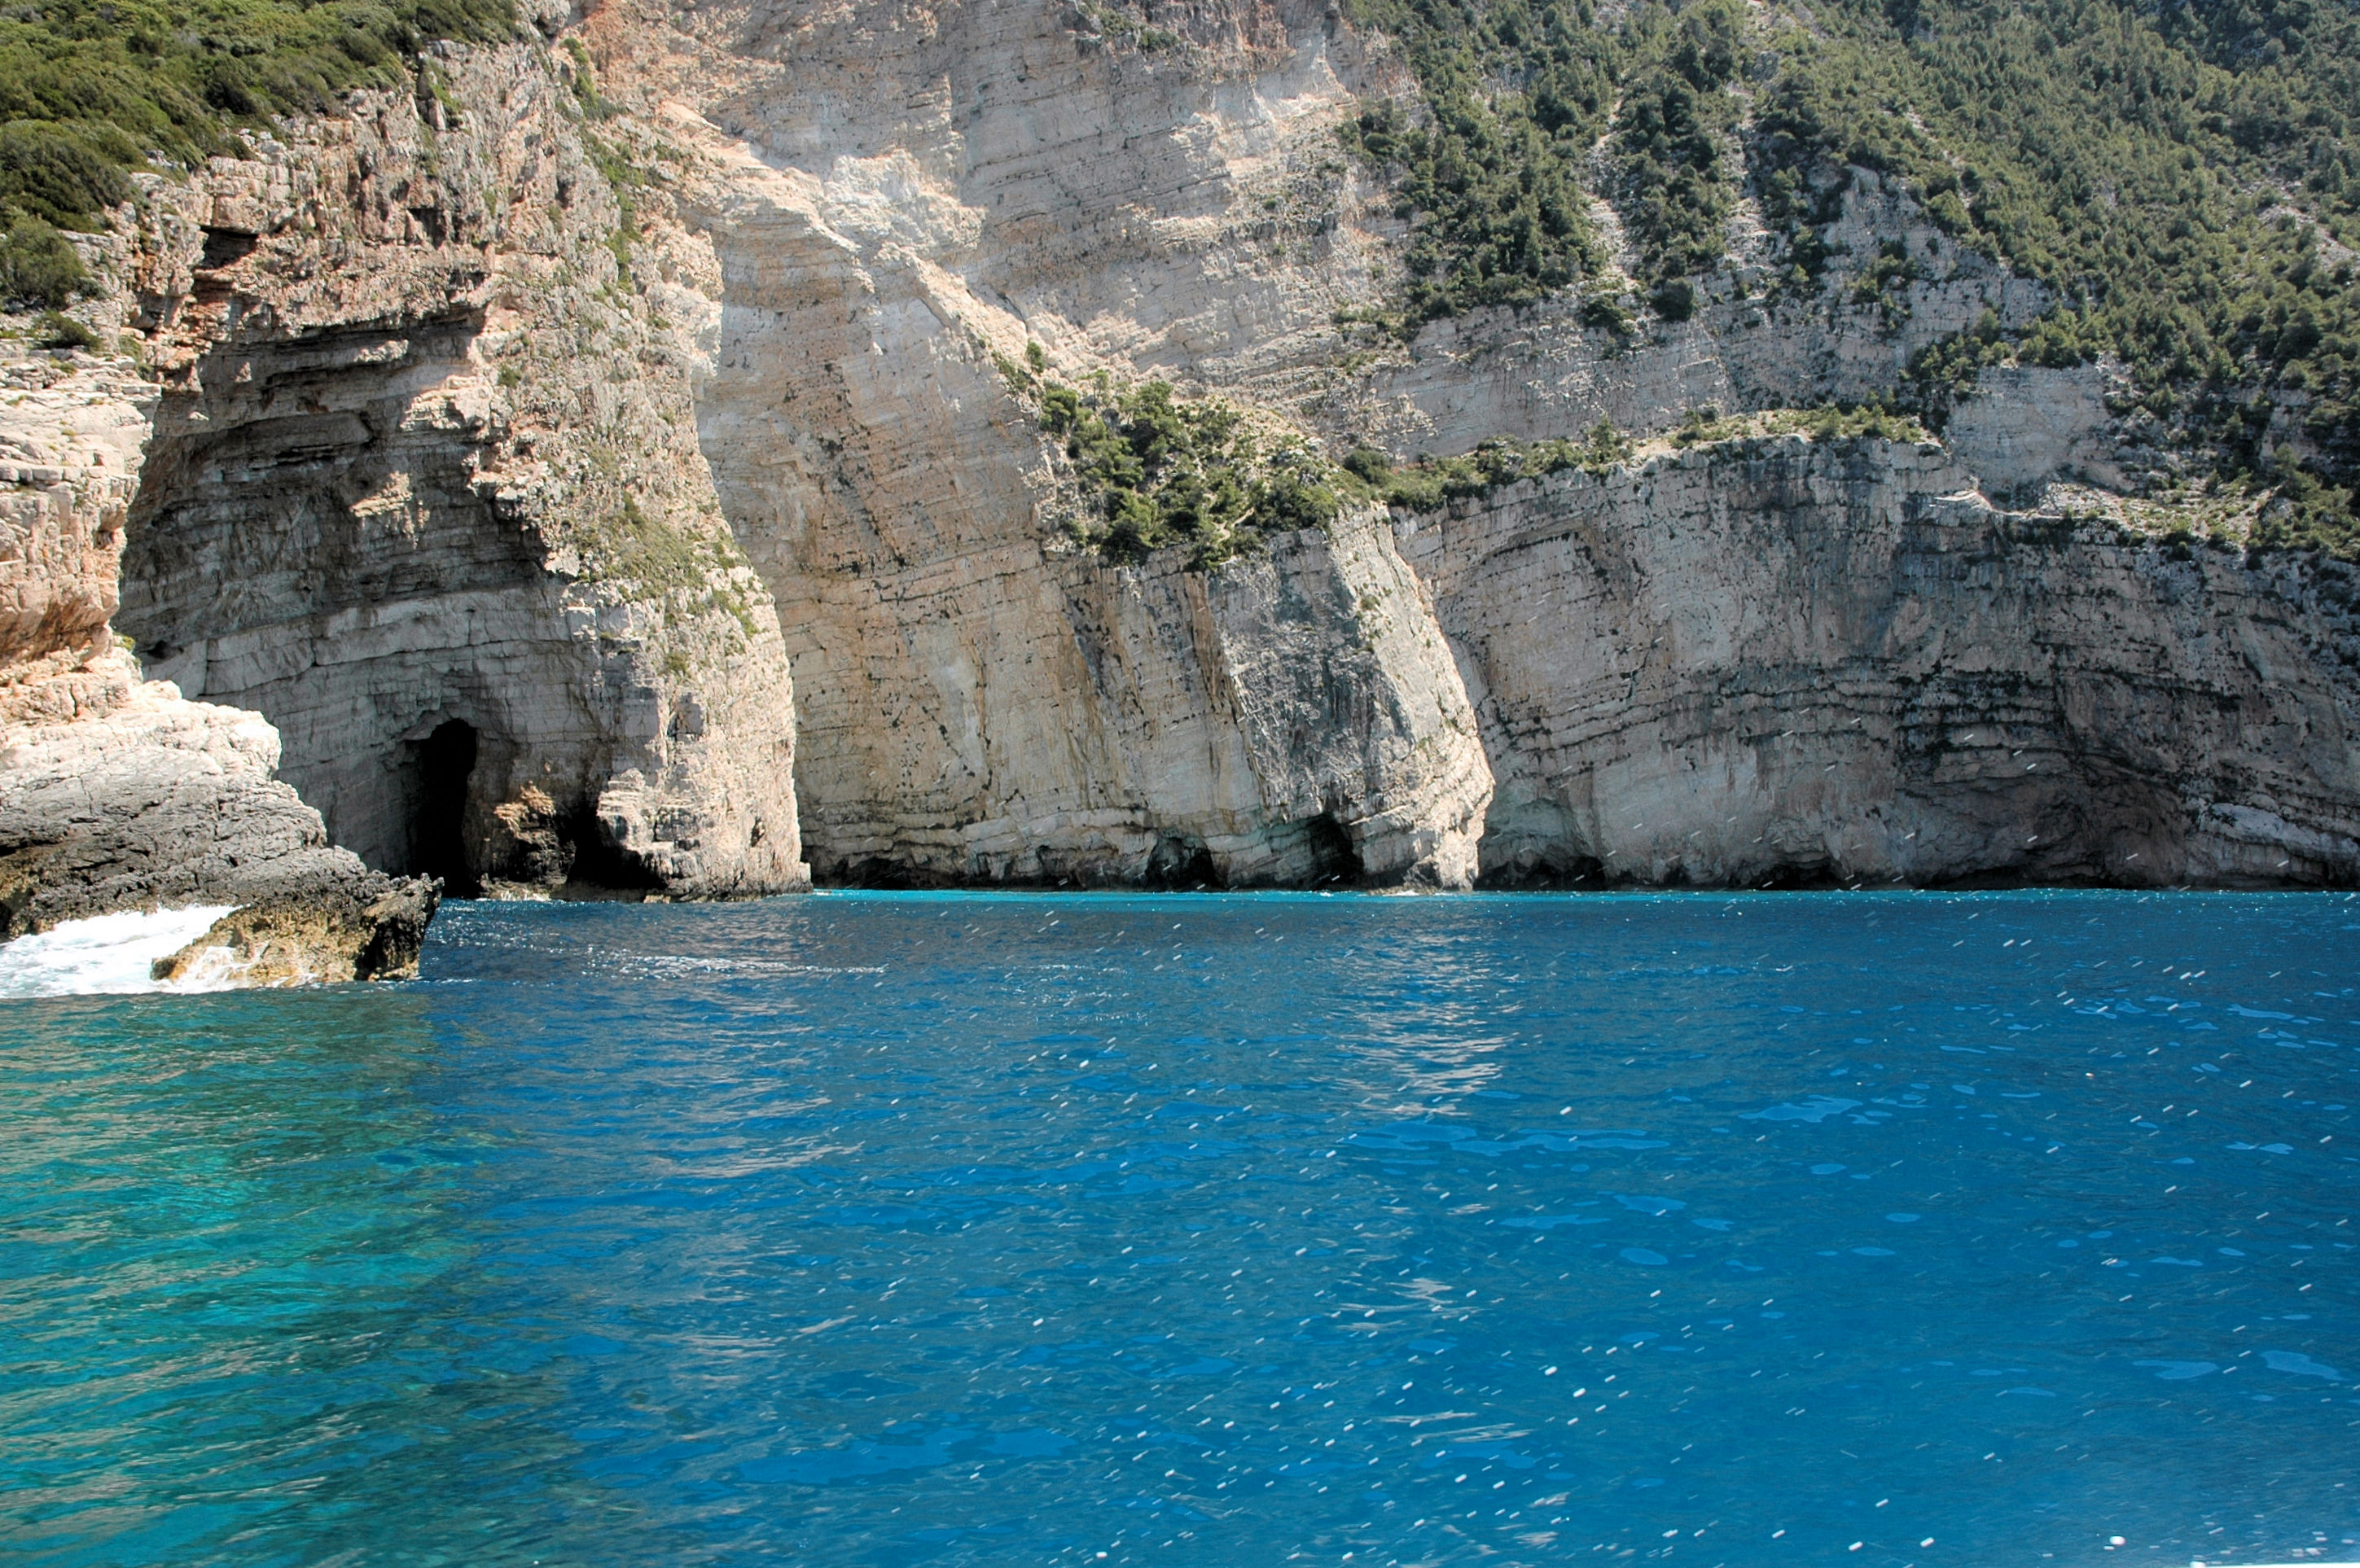 Mediterranean cliffs photo